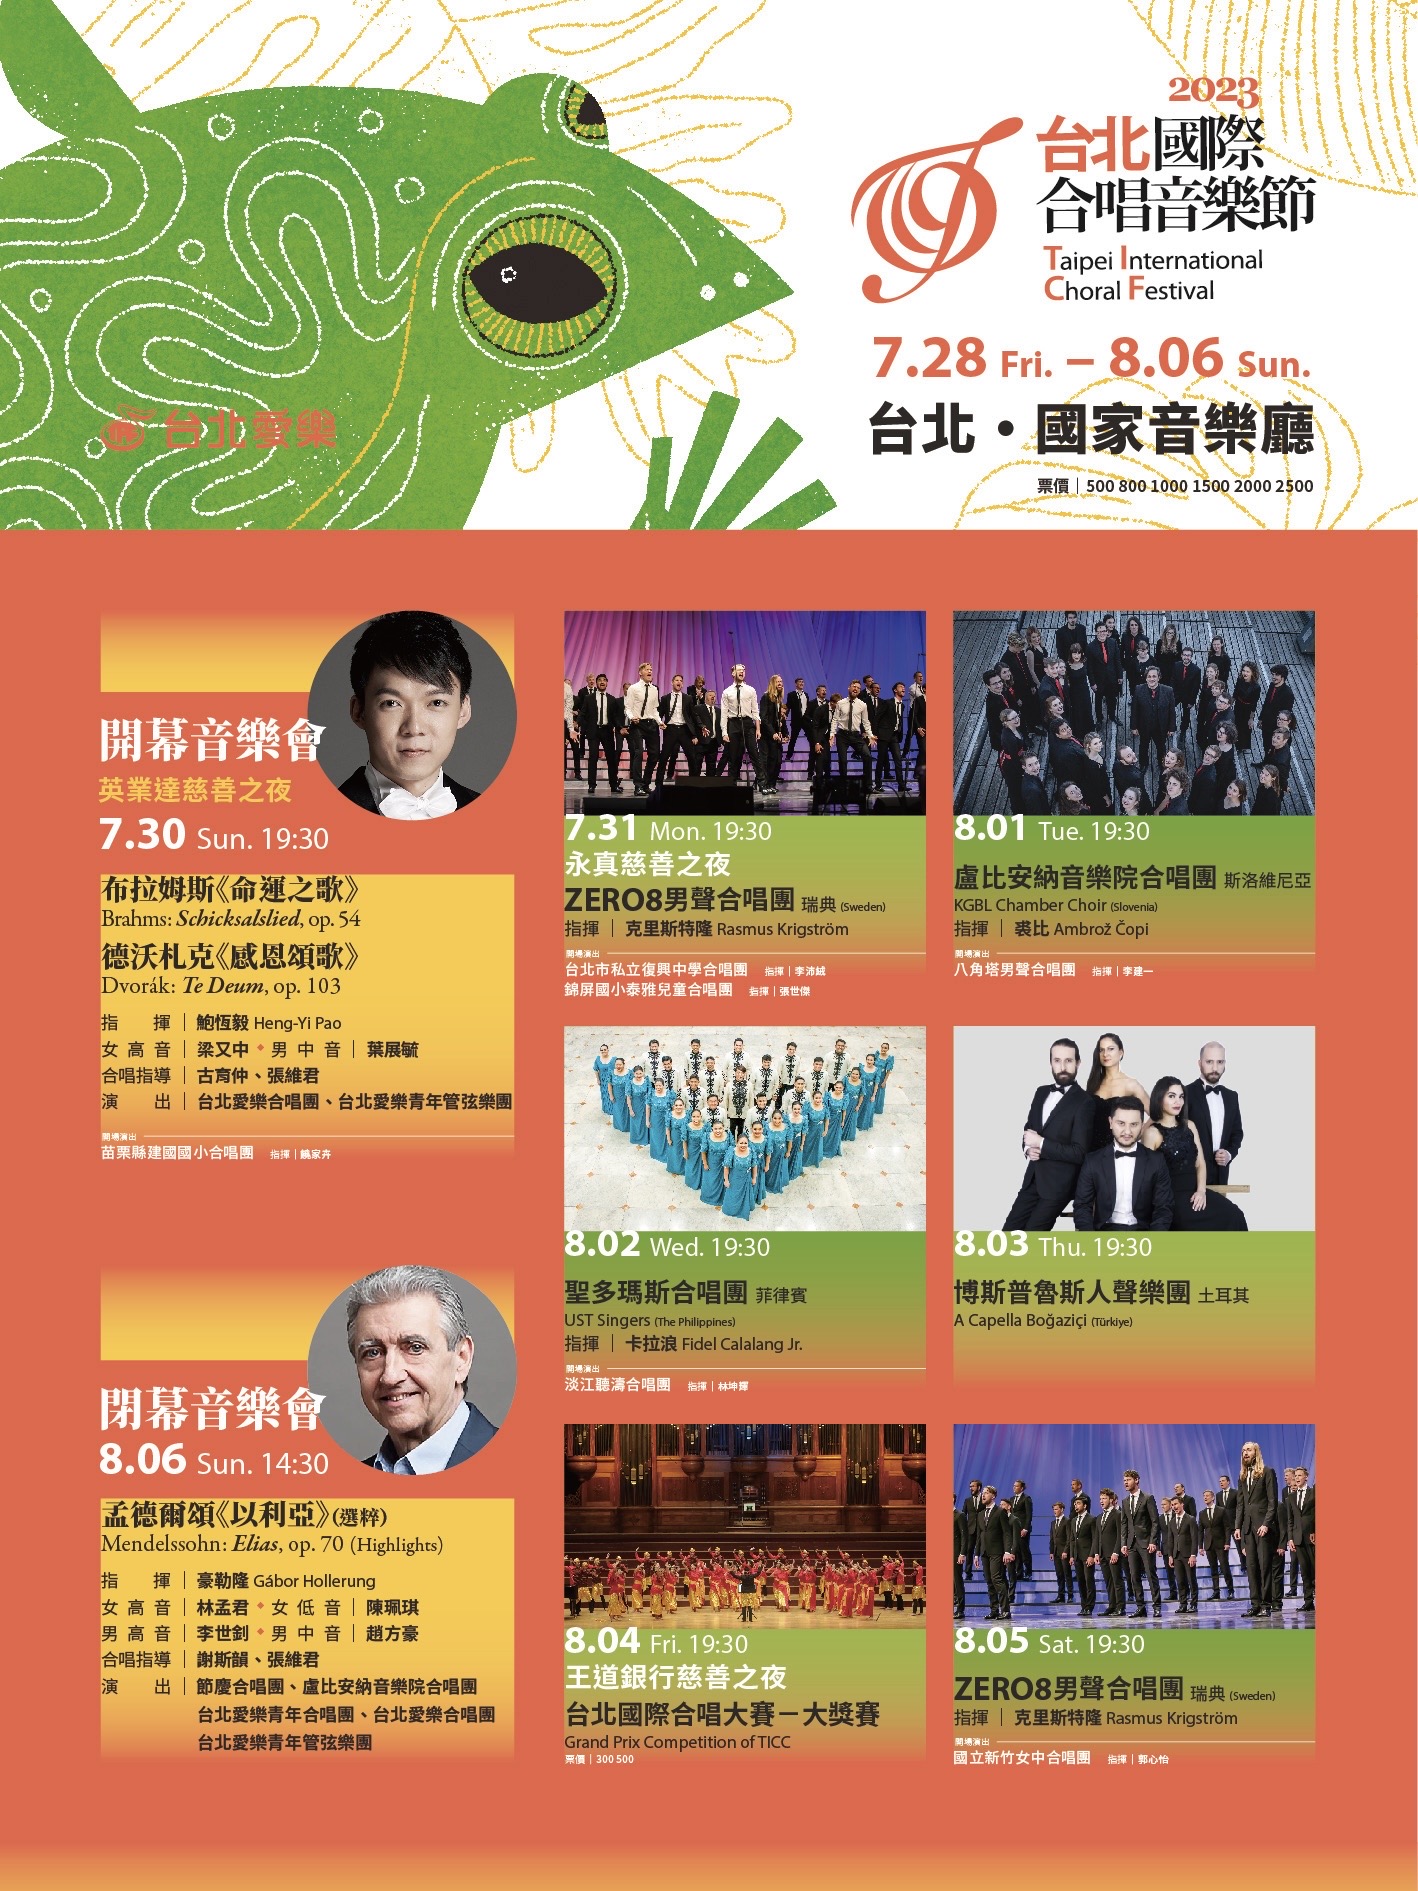 台北愛樂古育仲總監介紹「2023台北國際合唱音樂節」